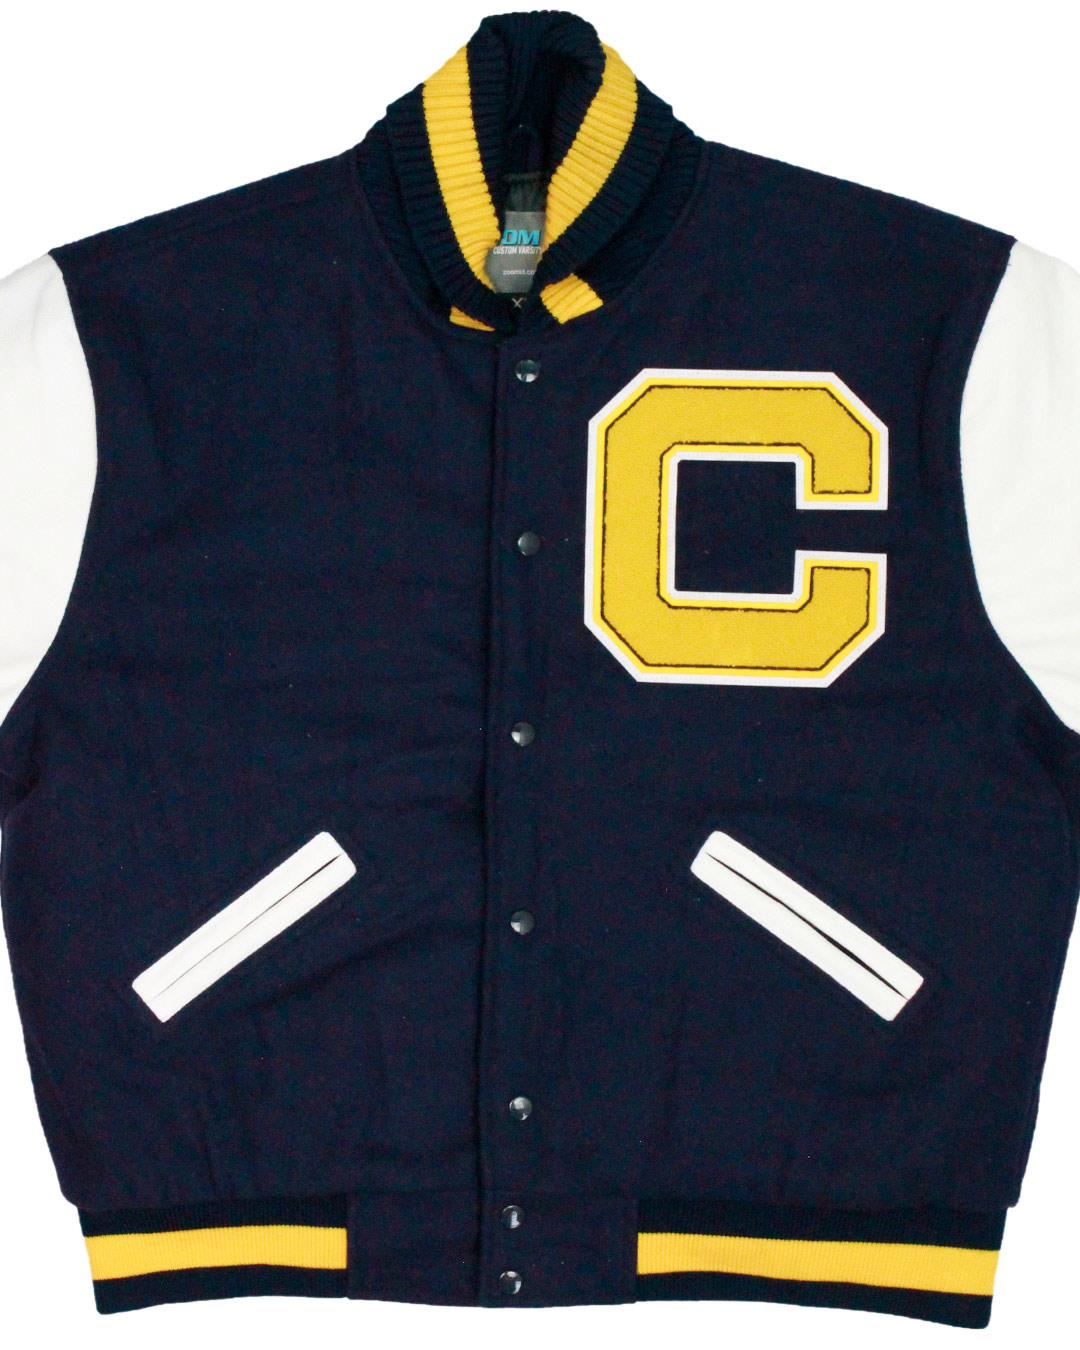 Calumet High School Wolverines Letter Jacket, Calumet, CO - Front